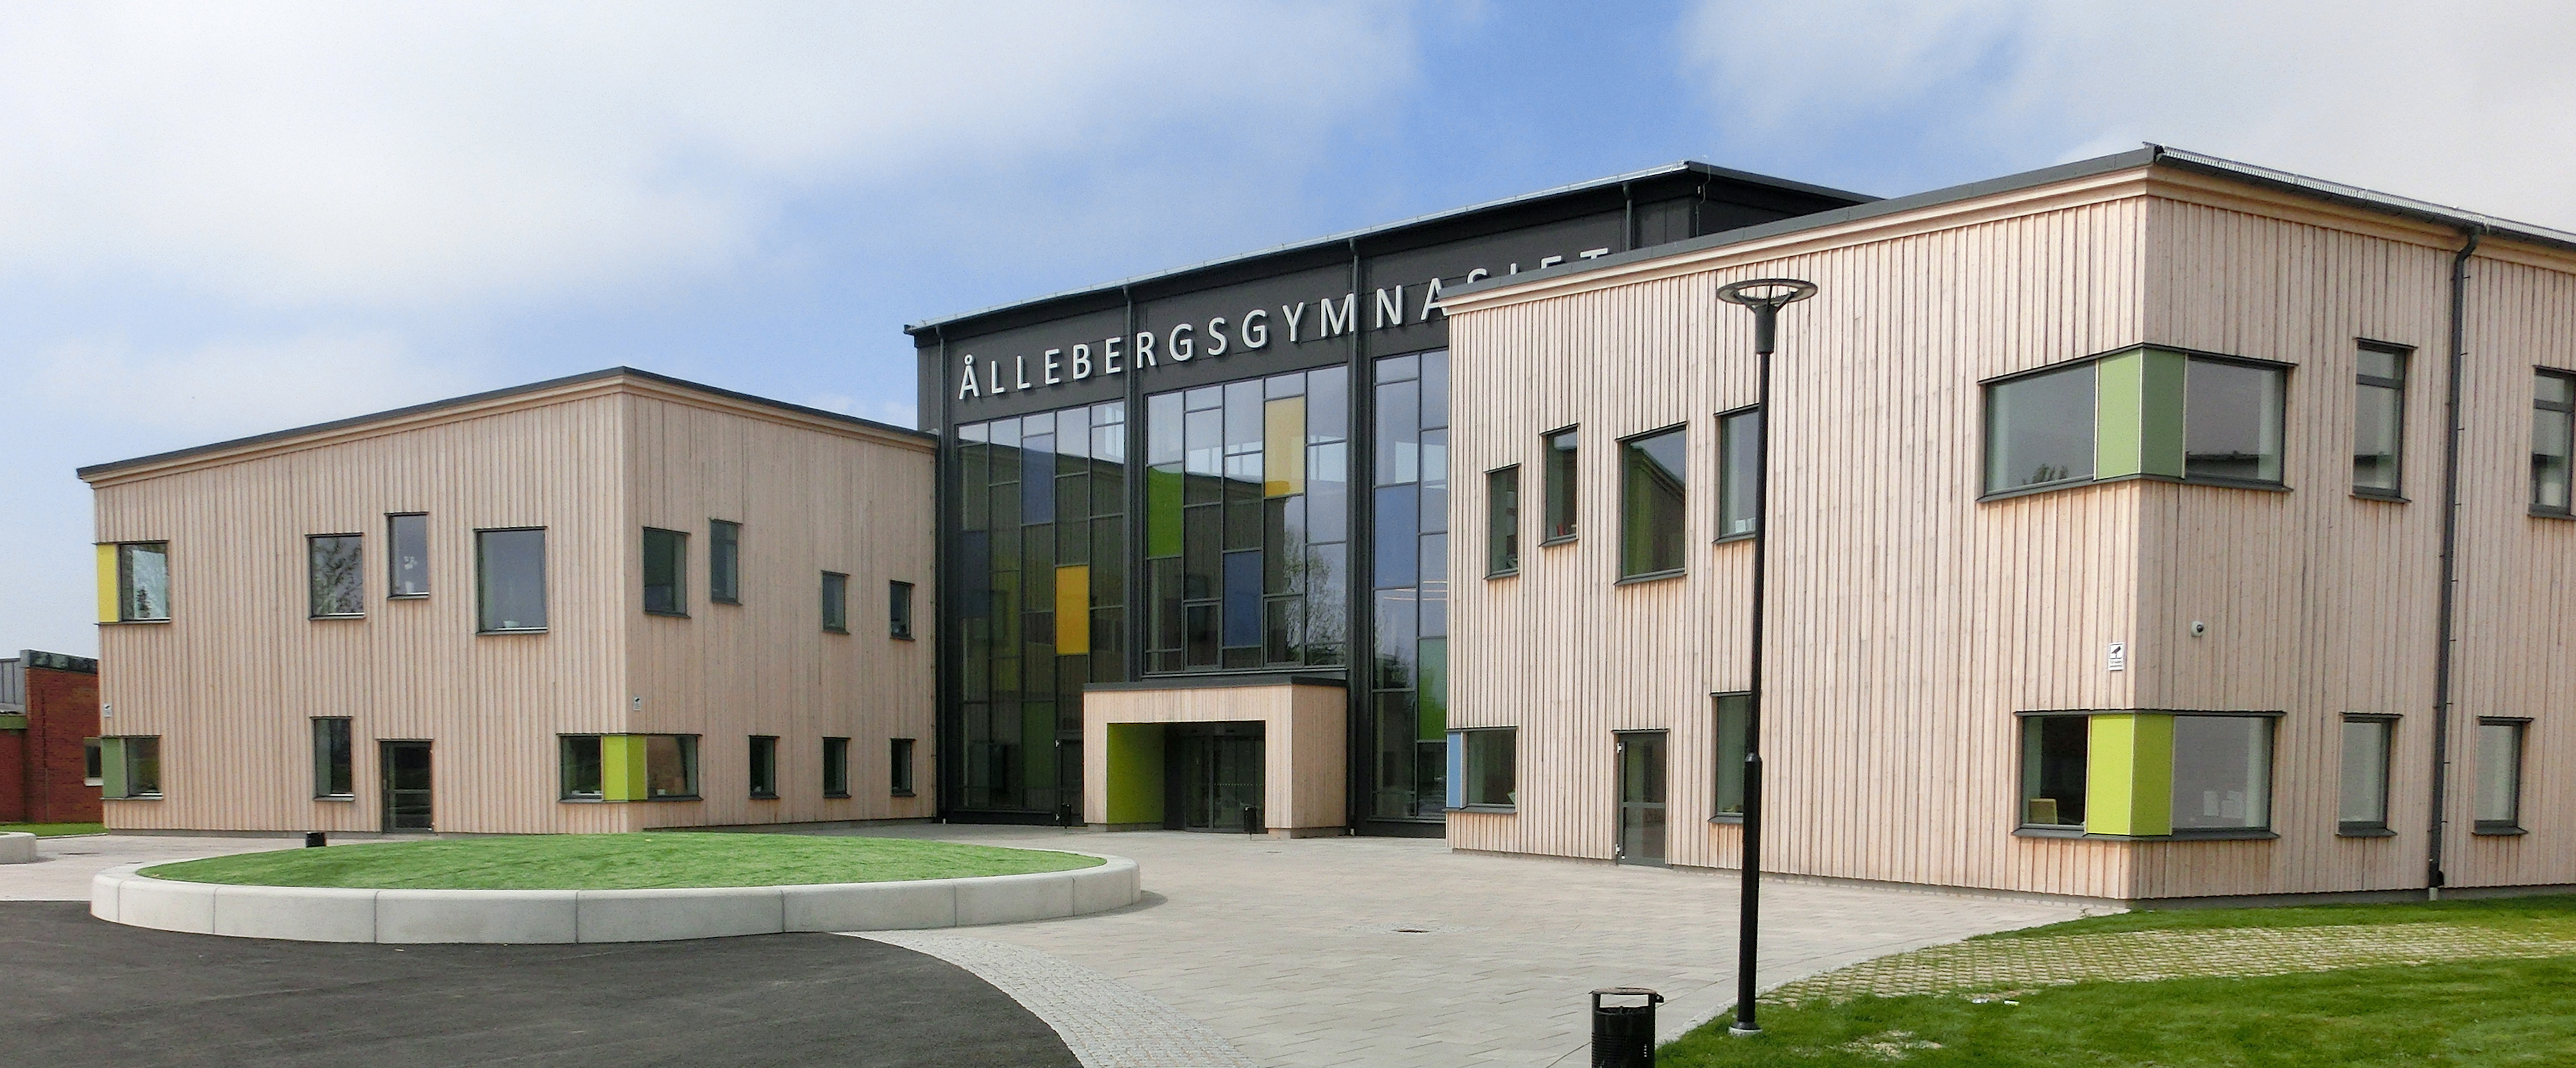 Ållebergsgymnasiet i Falköping